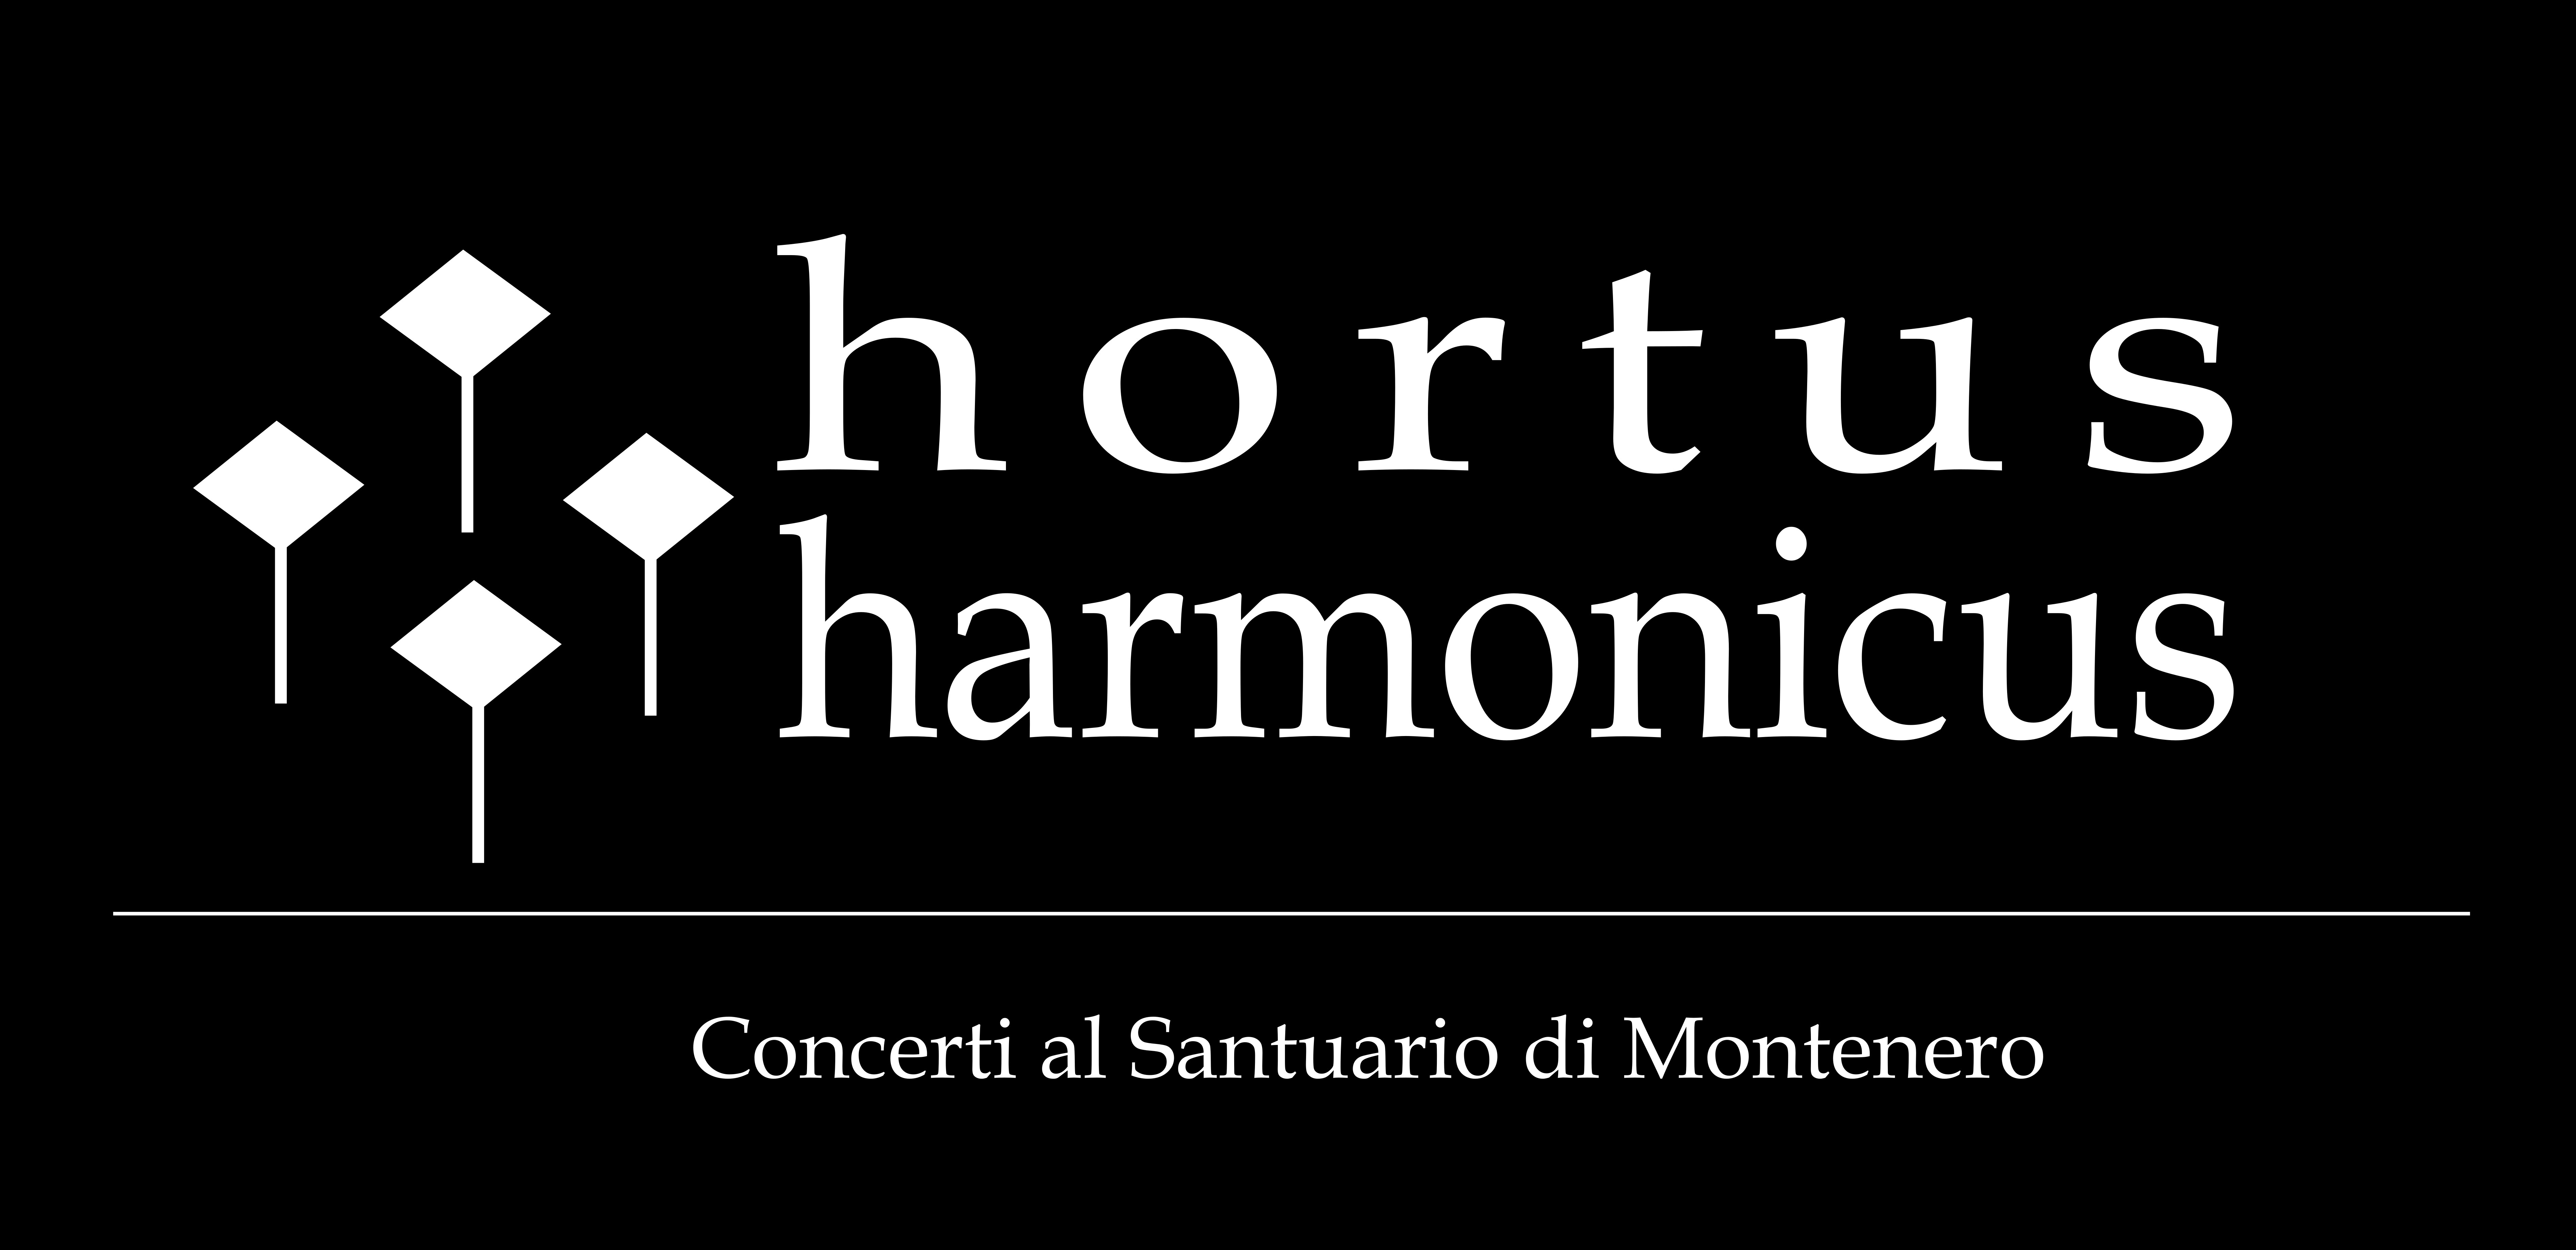 Hortus Harmonicus - Concerti al Santuario di Montenero (Livorno)